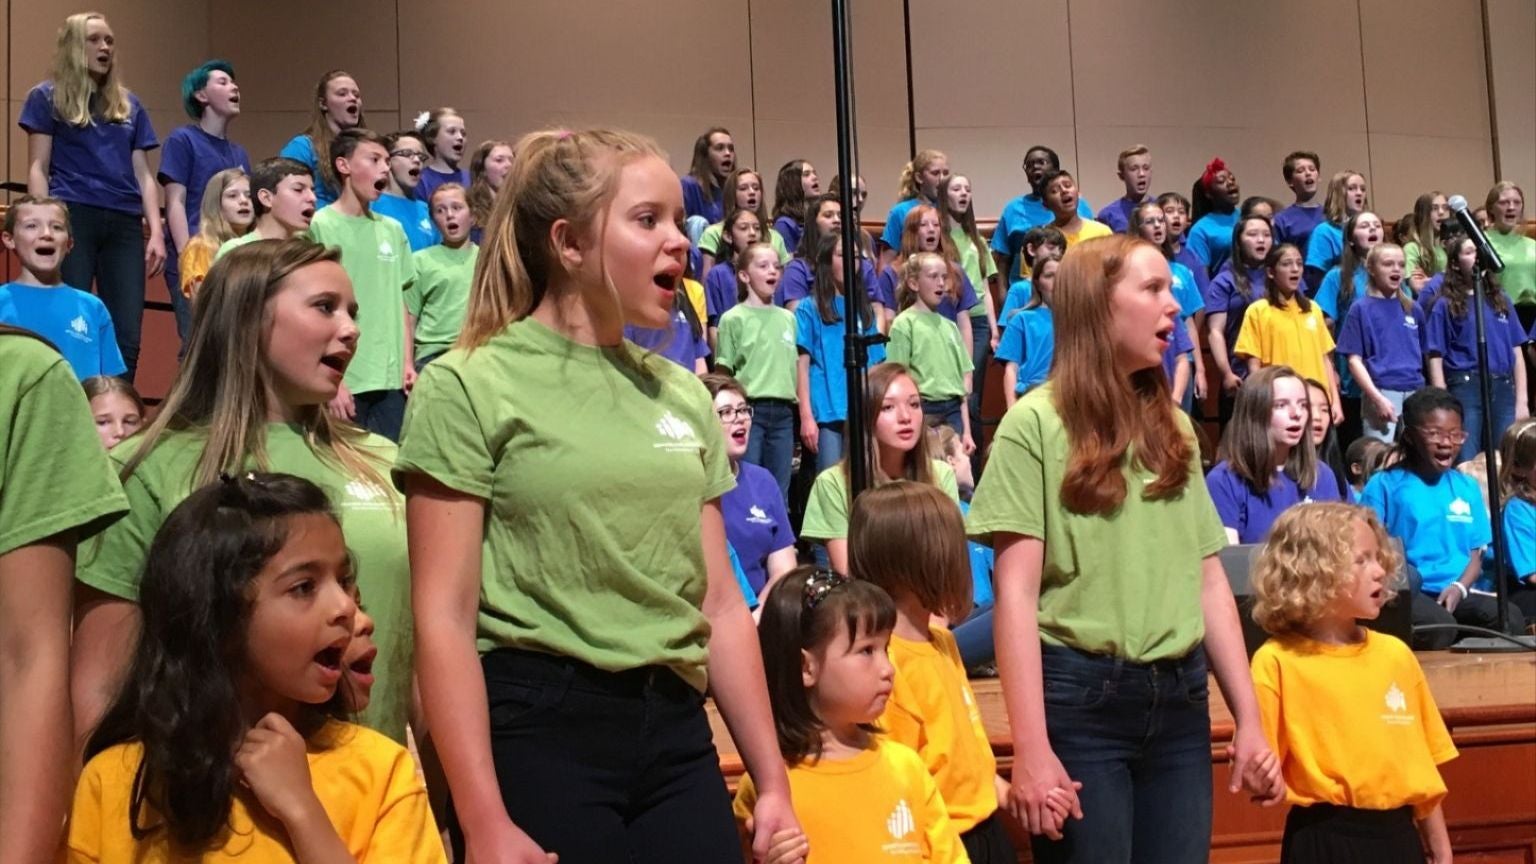 Denver Children's Choir 1536x864.jpg